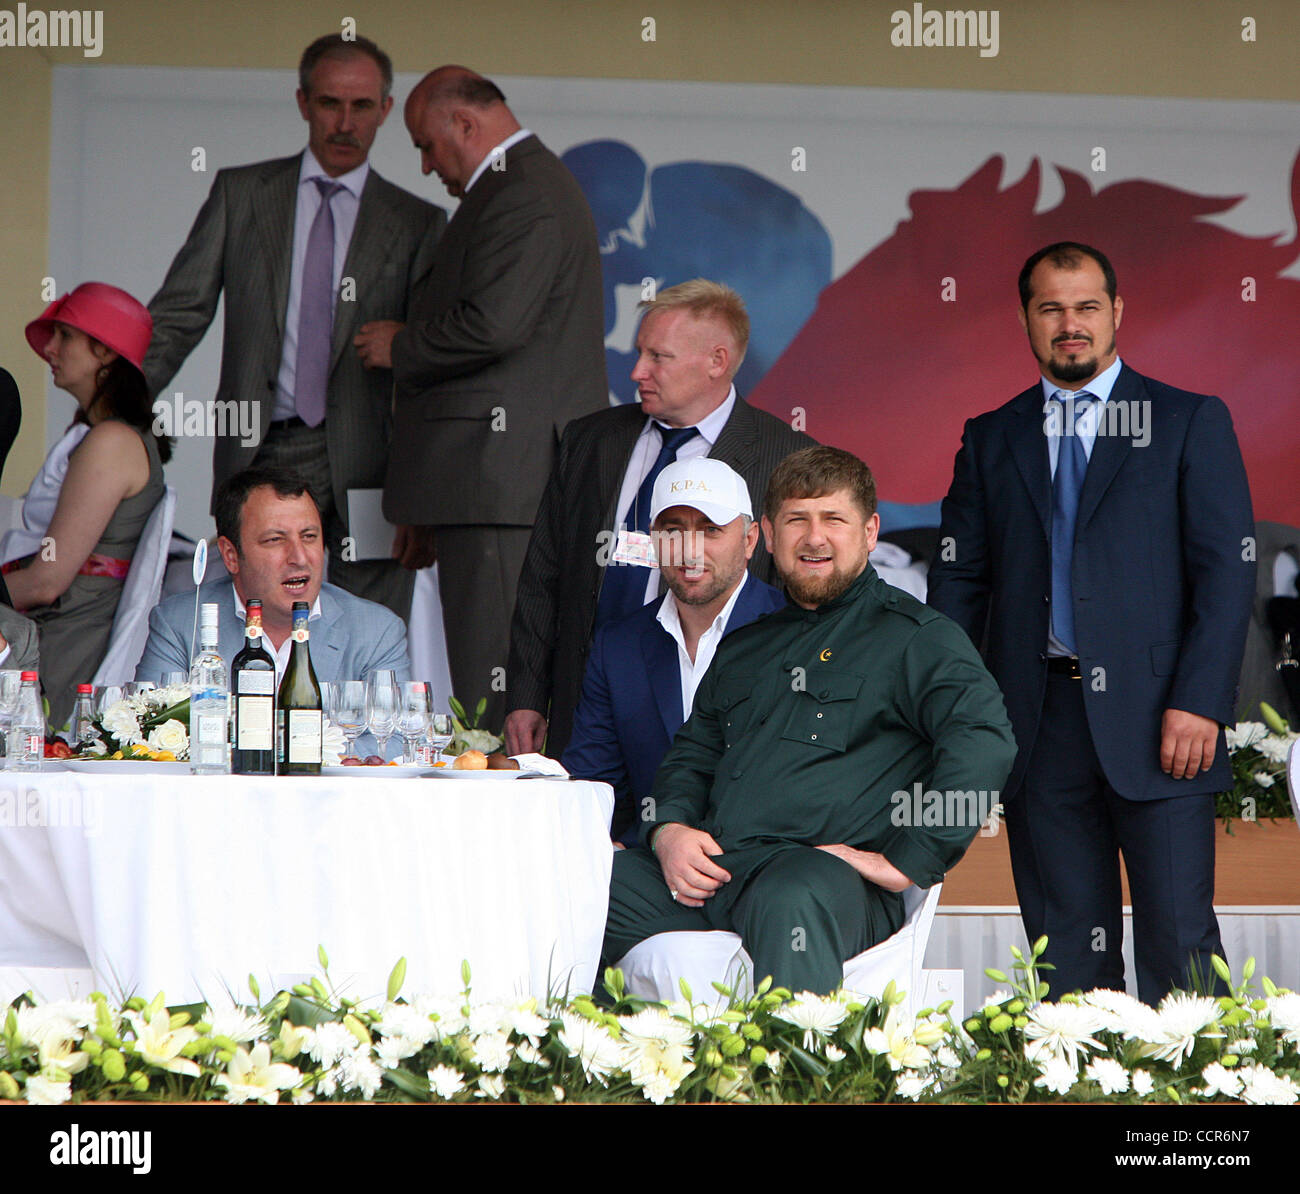 Tschetschenischen Präsidenten Ramzan Kadyrov (zweiter von rechts) Uhren das Presidential Pferderennen in Rostow am Don City of Russia statt. Präsident Kadyrov wird von seinem Cousin und tschetschenischen erster stellvertretender Ministerpräsident Adam Delimkhanov (im Bild links zurück sitzen von Kadyrow) begleitet. Das Pferd im Besitz von Preside Stockfoto